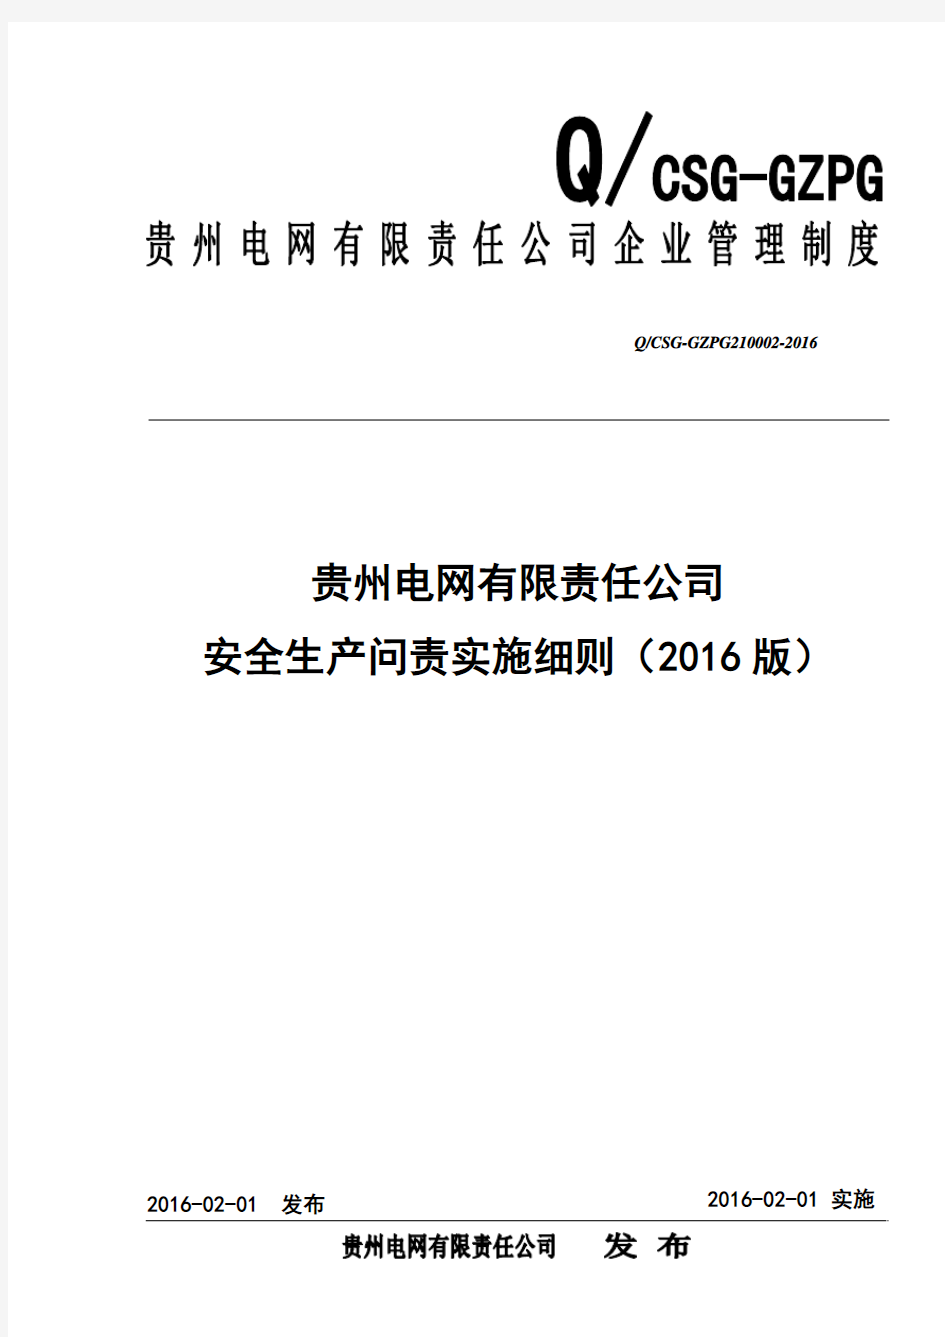 贵州电网有限责任公司安全生产问责实施细则(2016版)